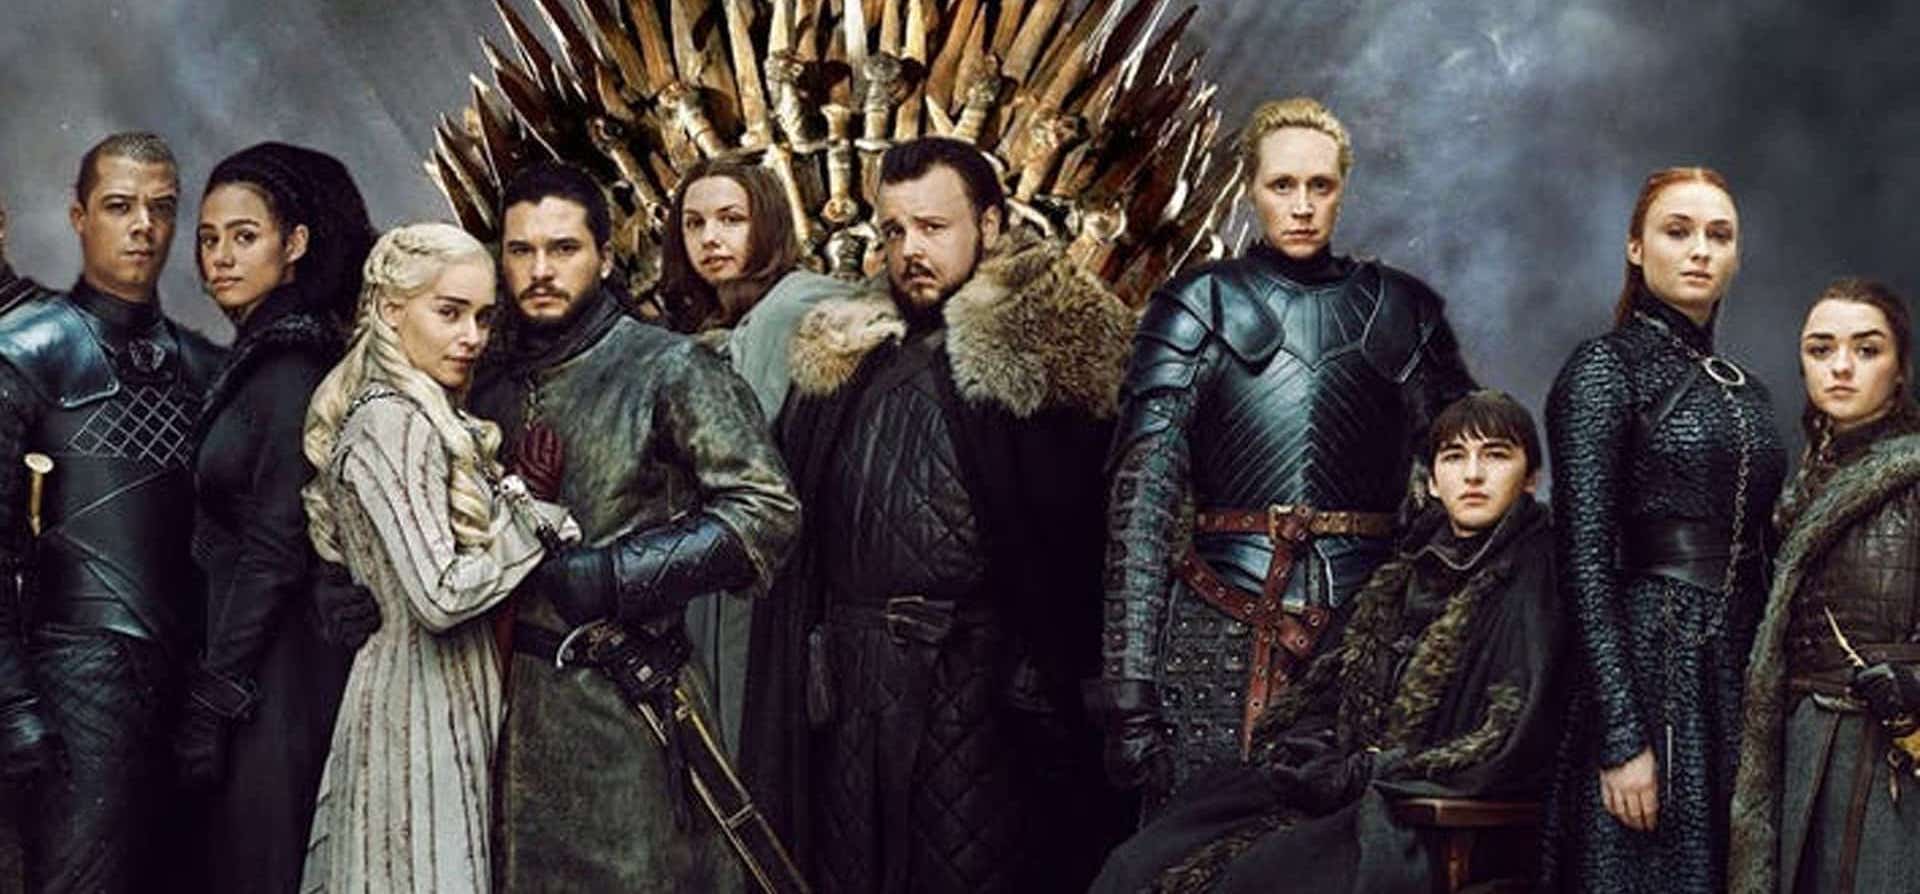 Il Trono di Spade, gli elementi fantasy della serie tv HBO